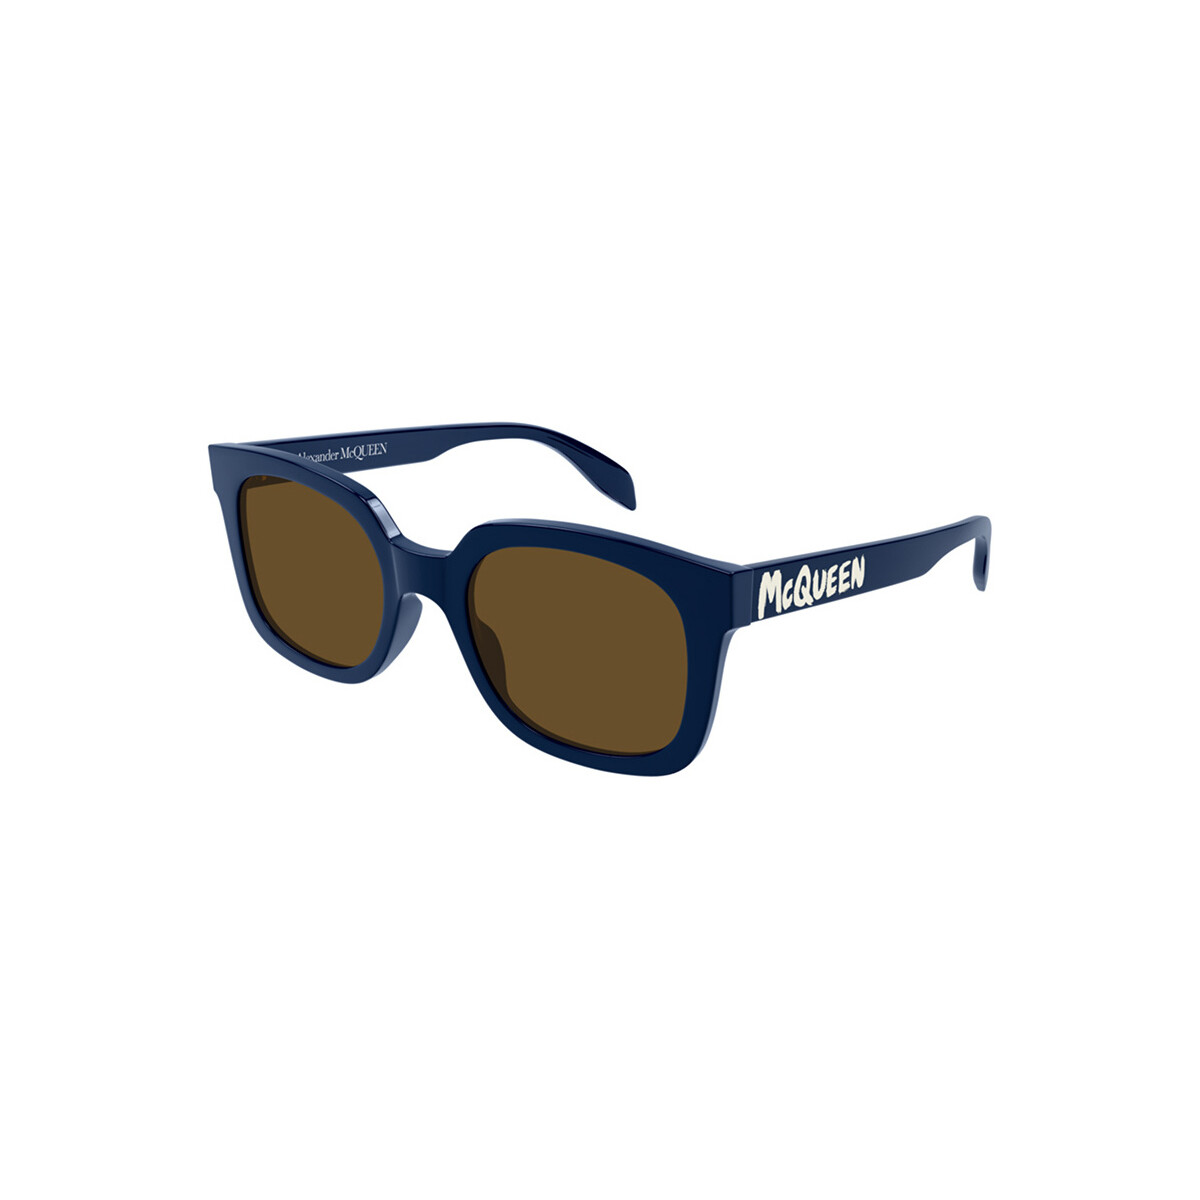 Orologi & Gioielli Uomo Occhiali da sole McQ Alexander McQueen AM0348S Occhiali da sole, Blu/Marrone, 53 Blu